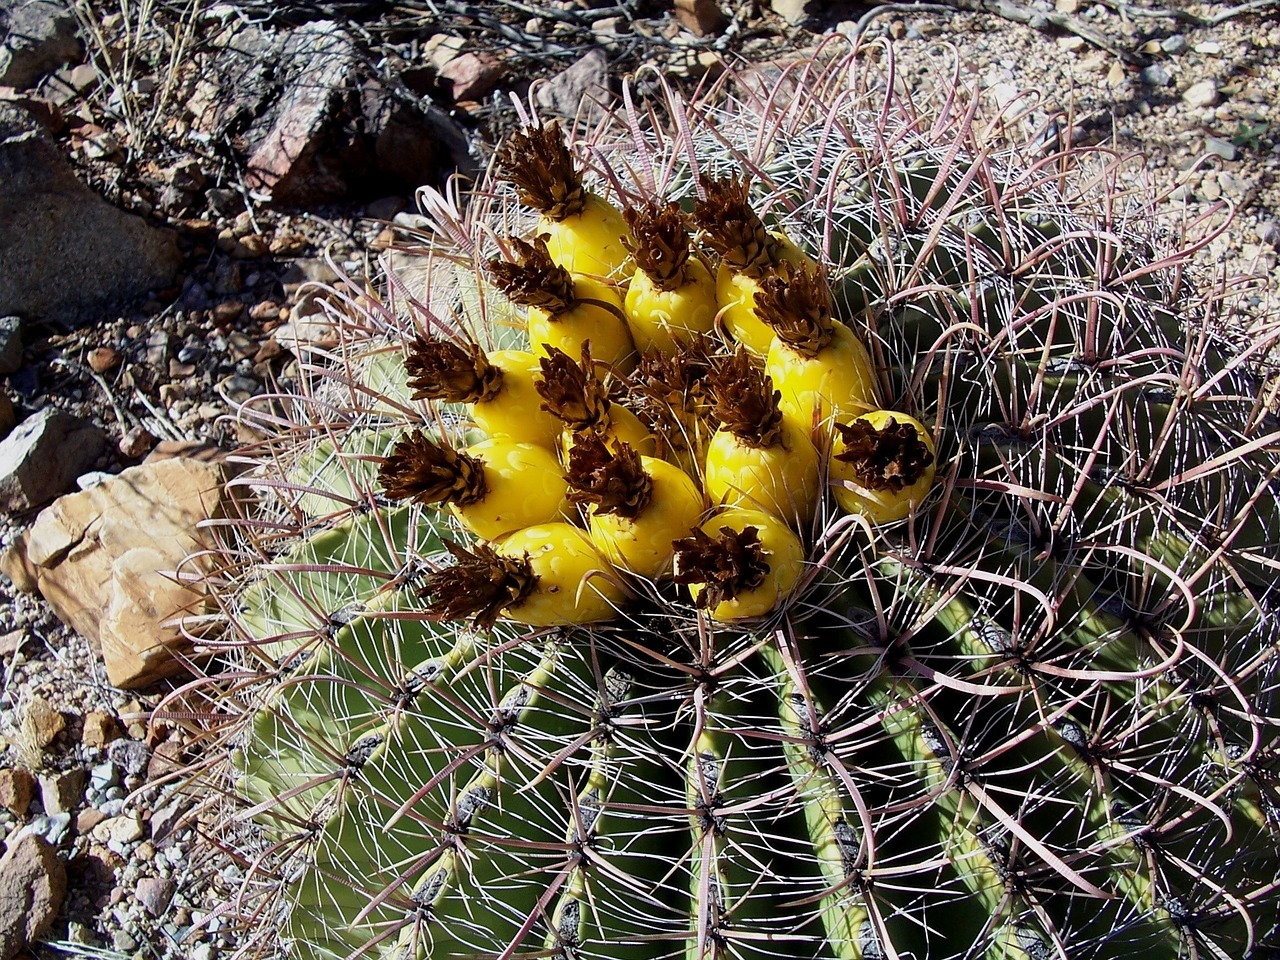 cactus barrel cactus arizona free photo